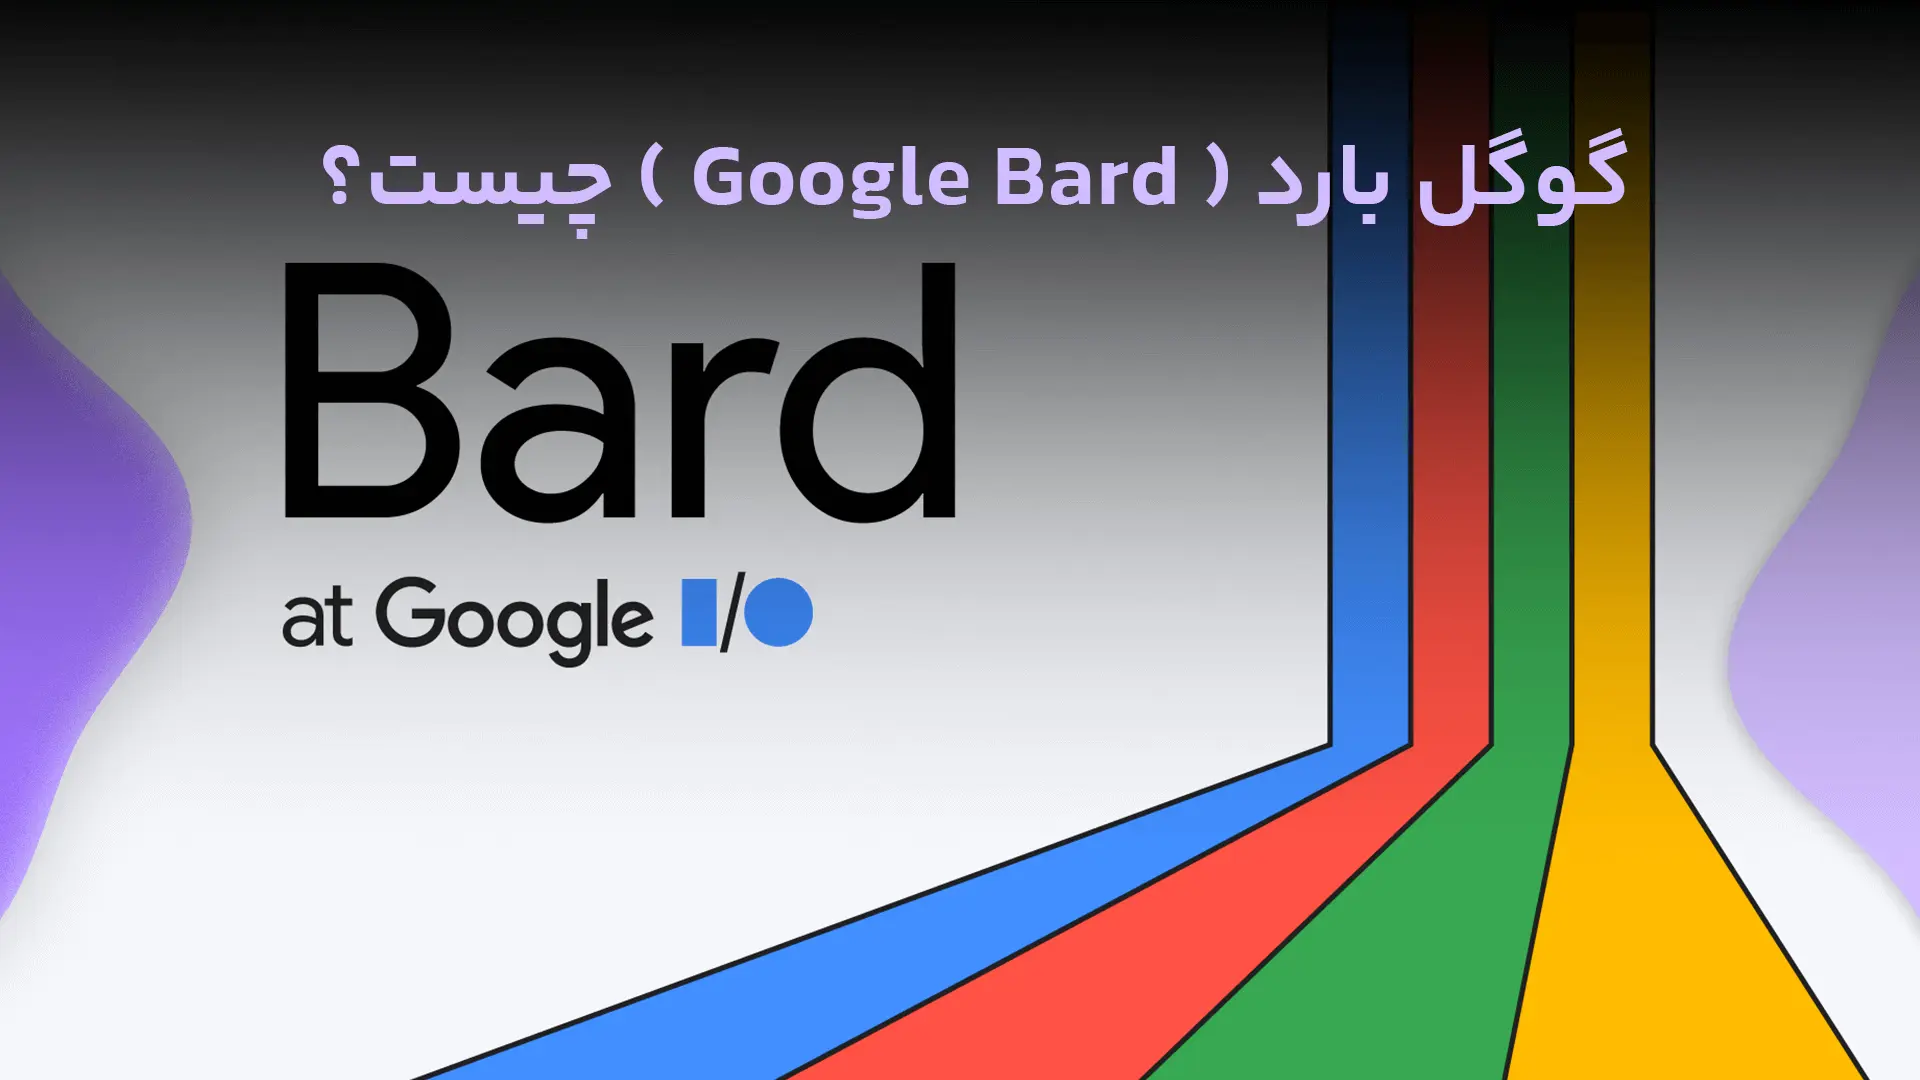 گوگل بارد ( Google Bard ) چیست؟